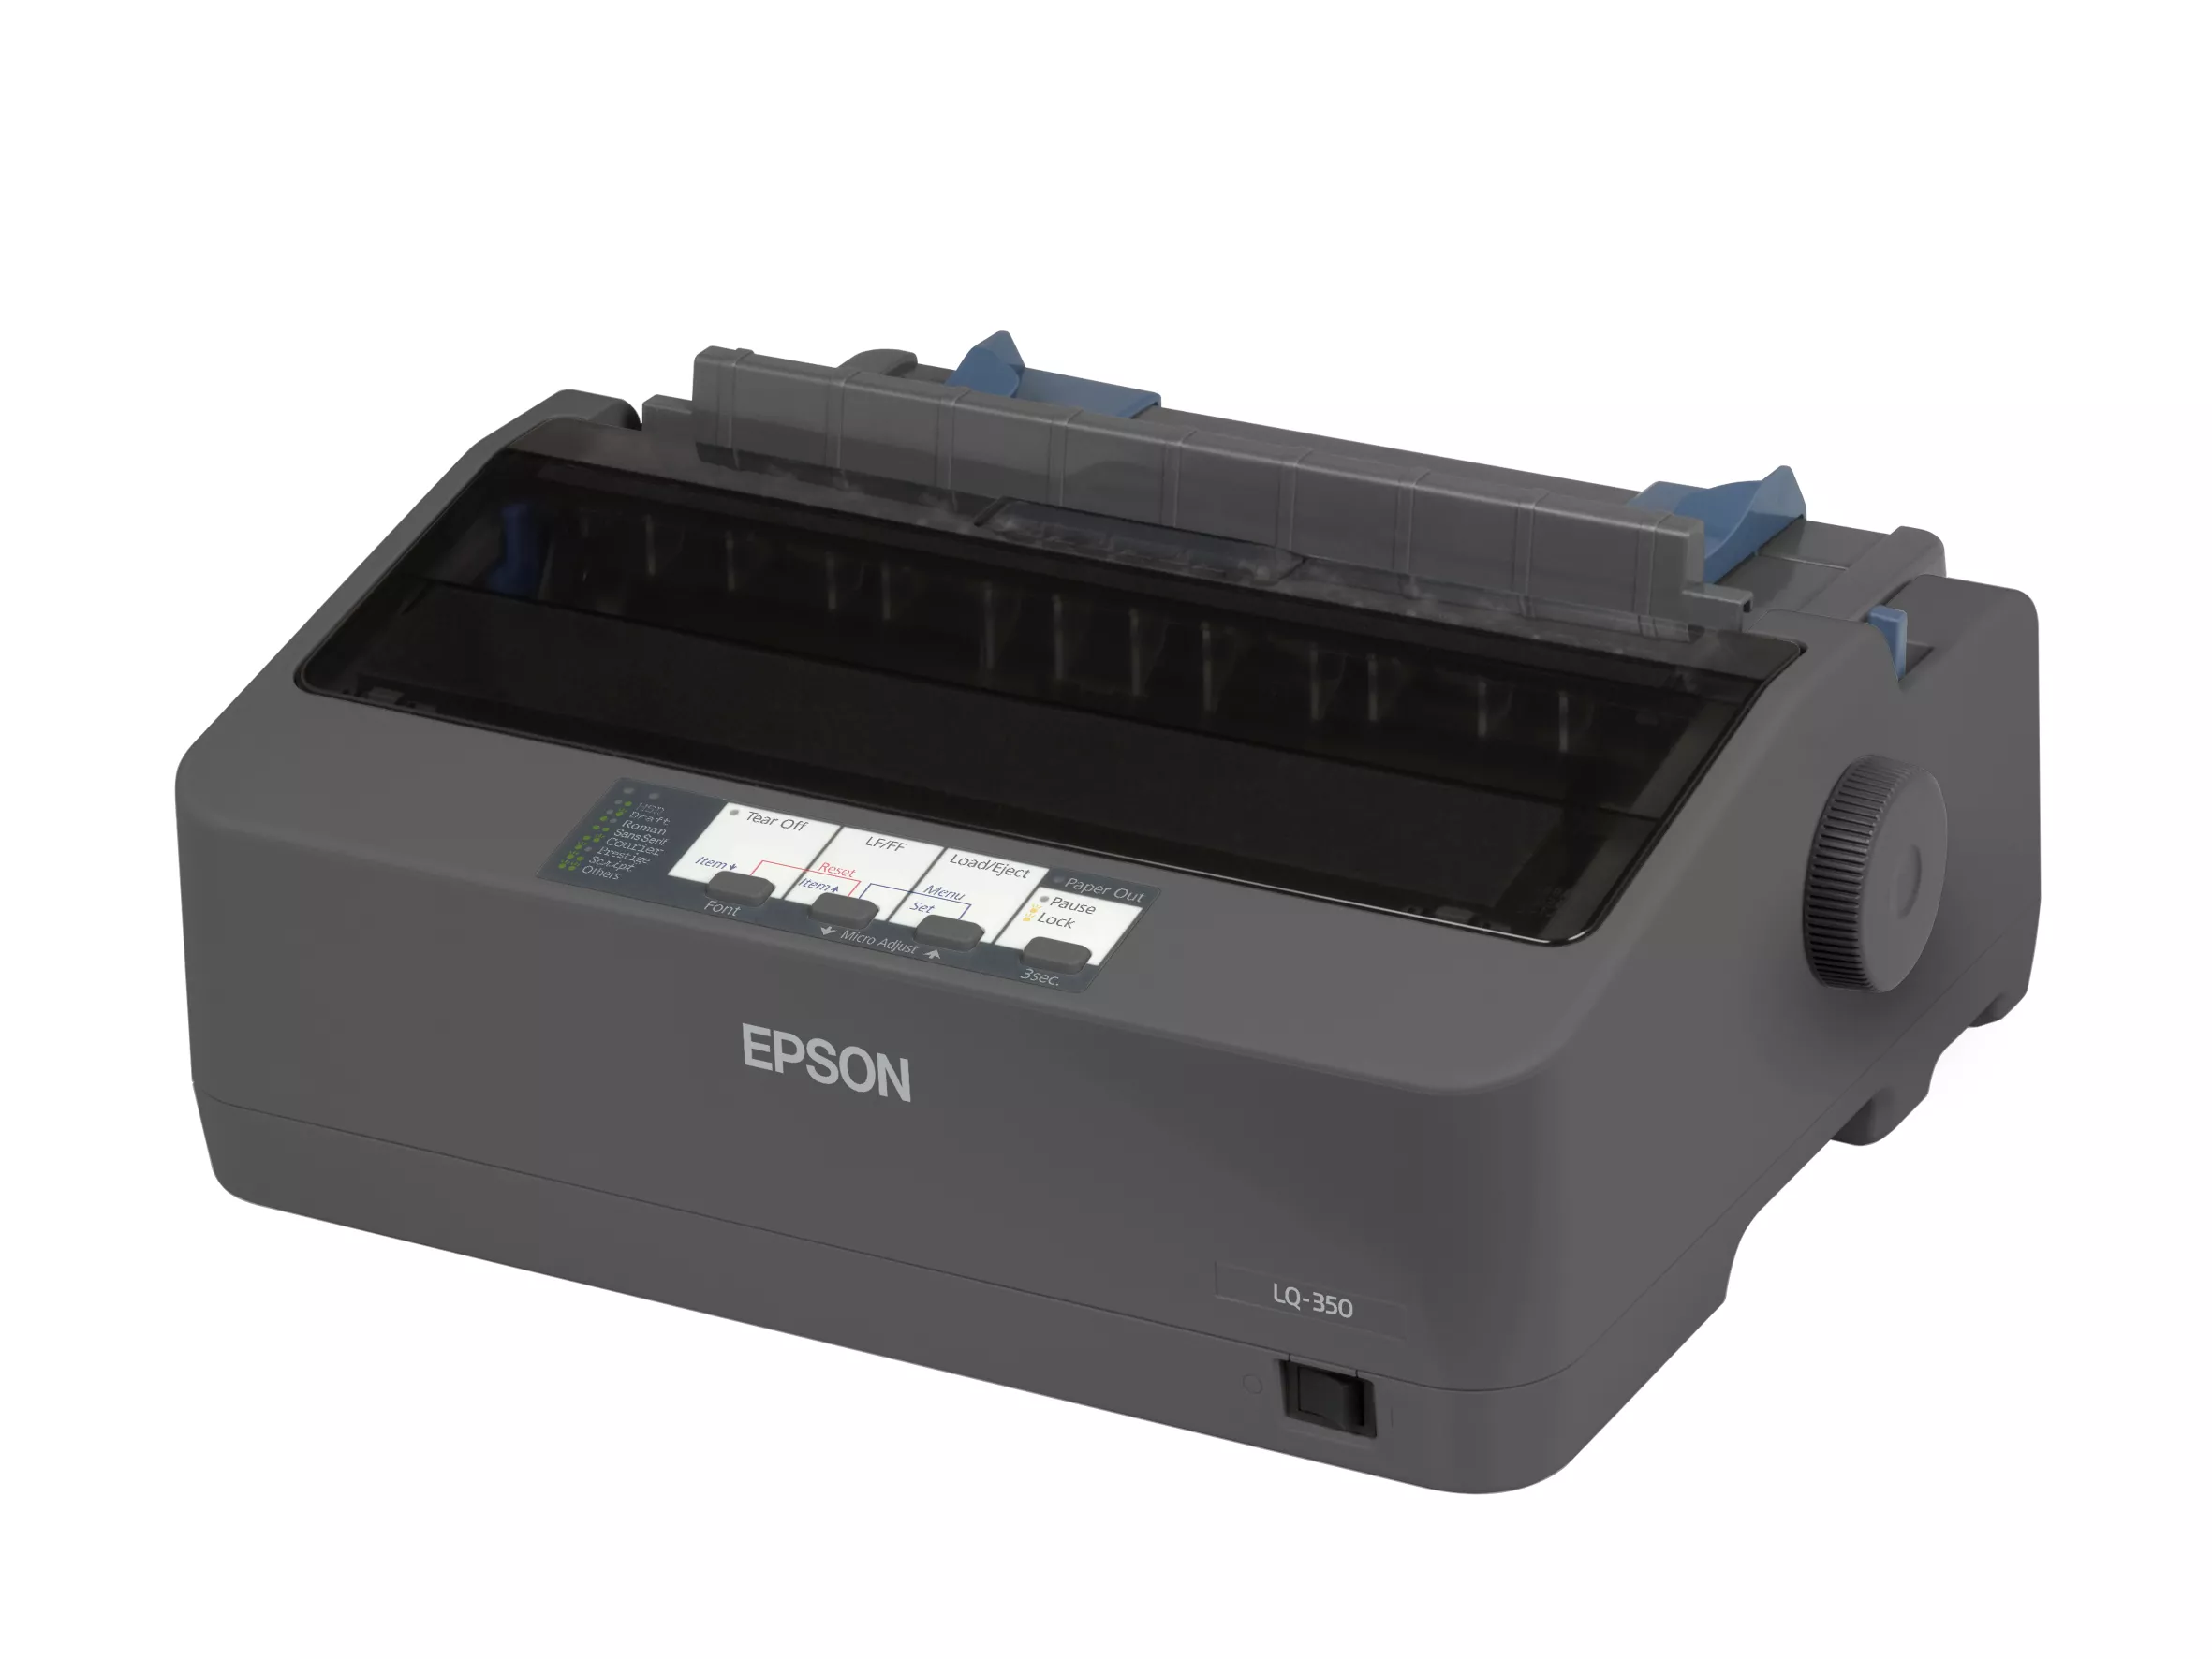 Achat EPSON LQ 350 Printer Mono B/W dot-matrix 24 sur hello RSE - visuel 3